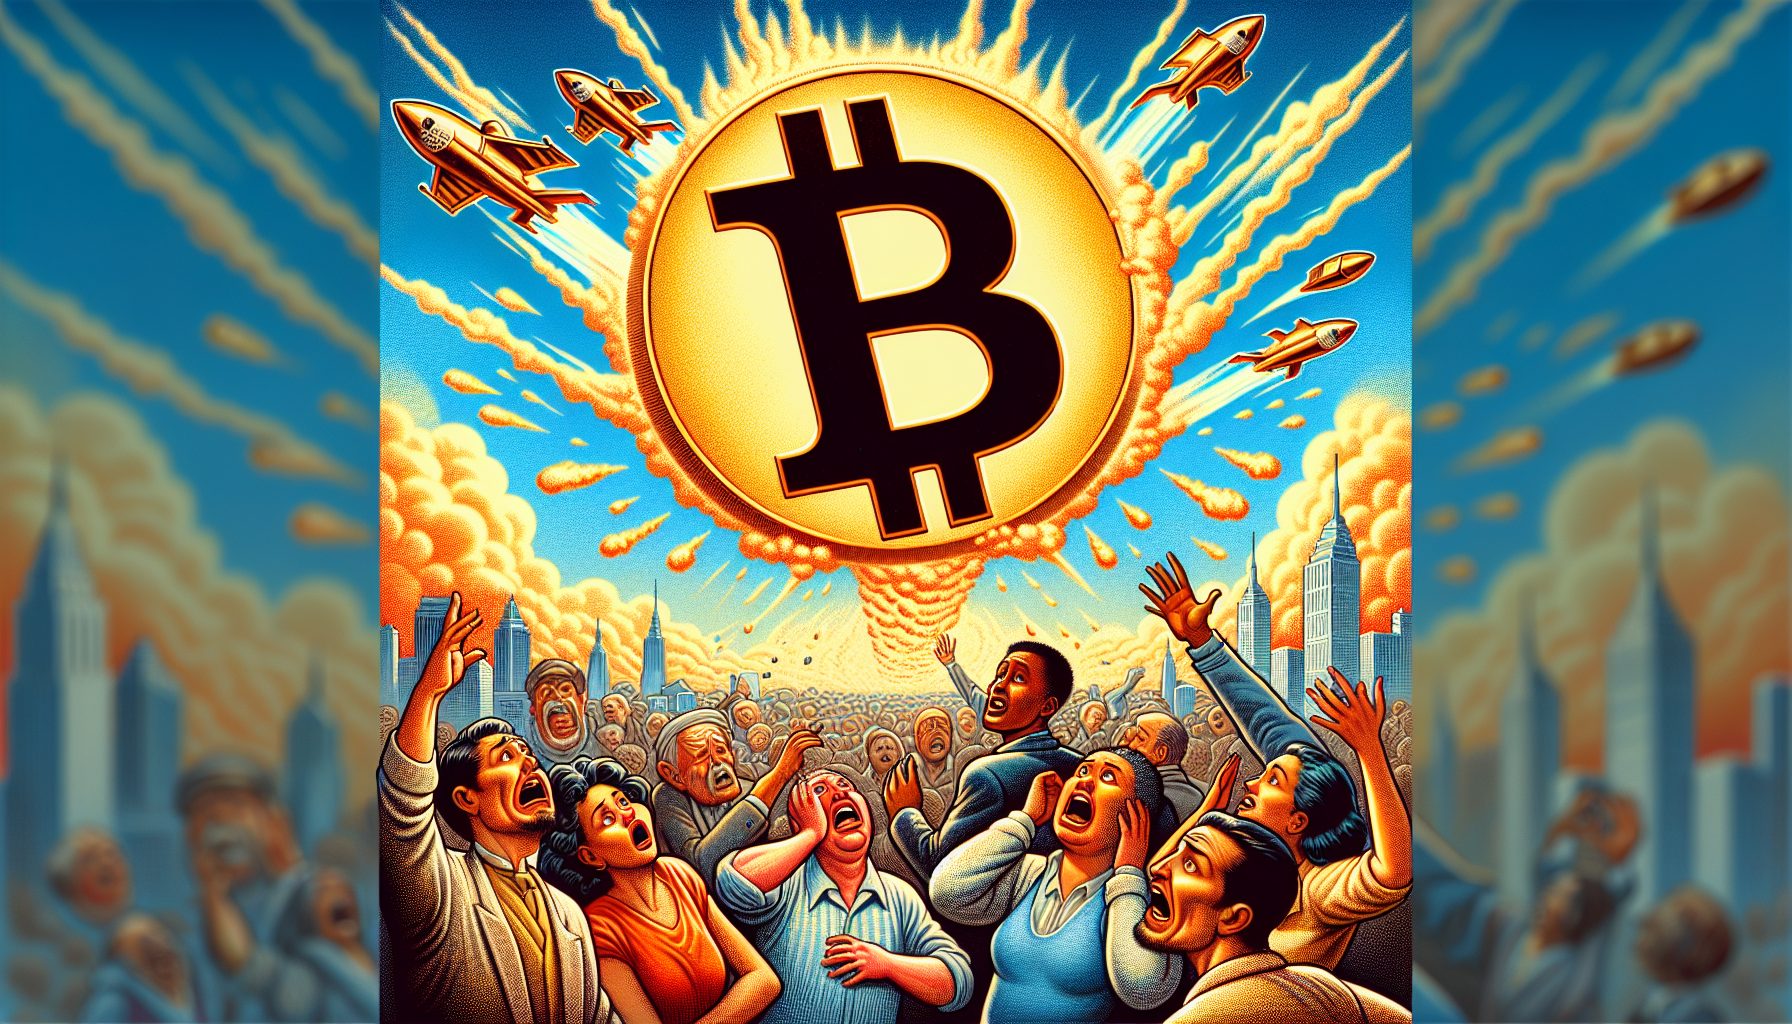 "Bitcoin Skyrockets"